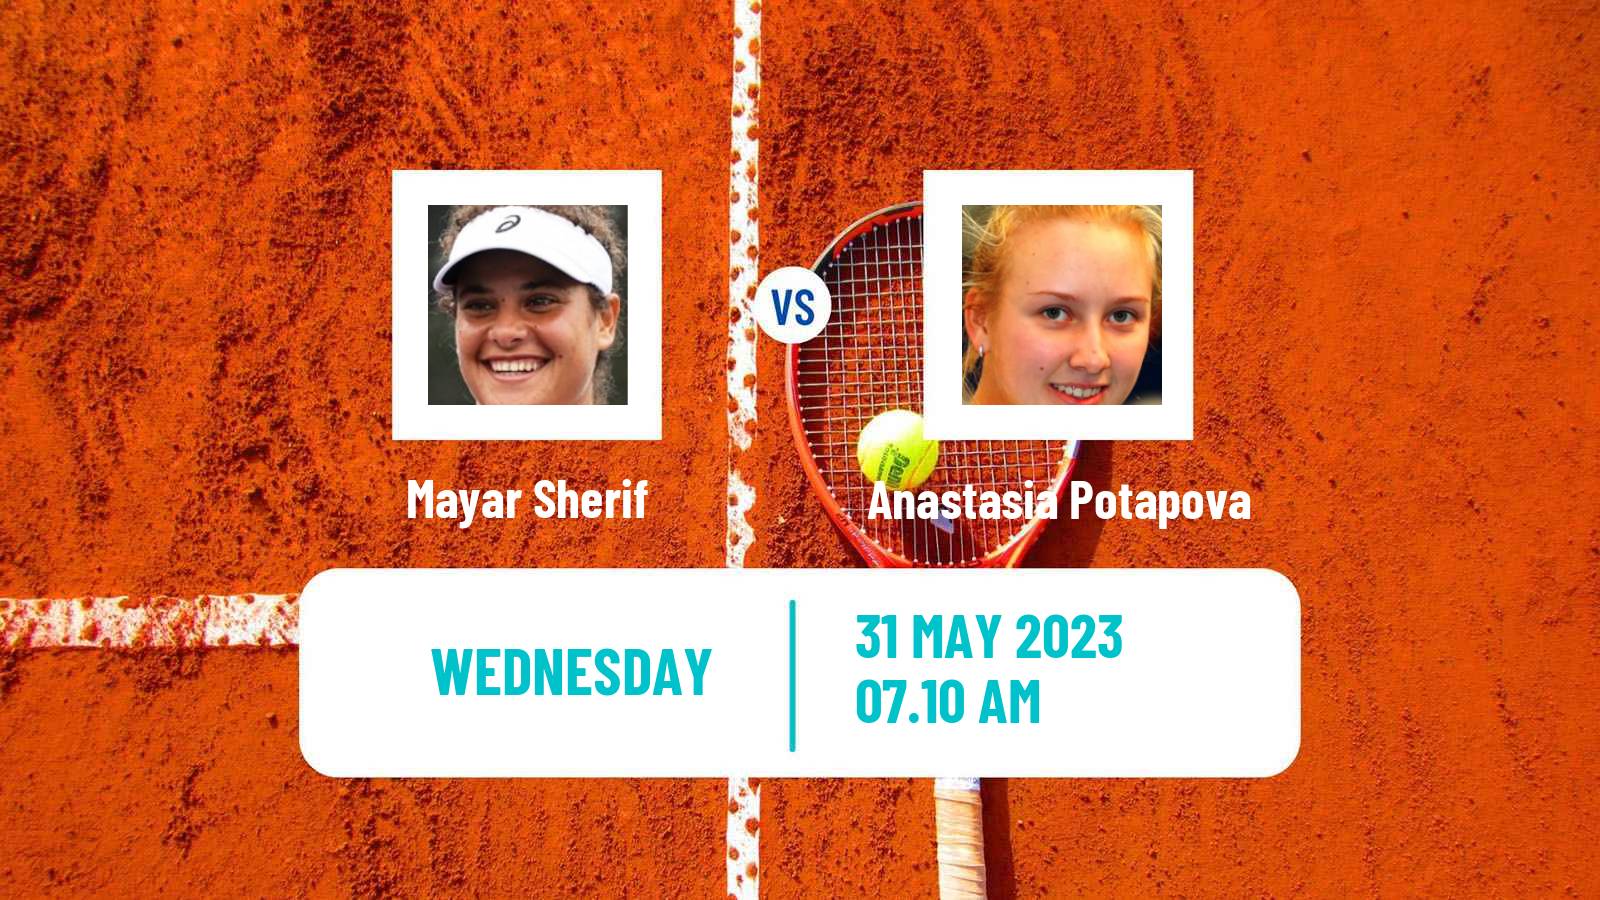 Tennis WTA Roland Garros Mayar Sherif - Anastasia Potapova